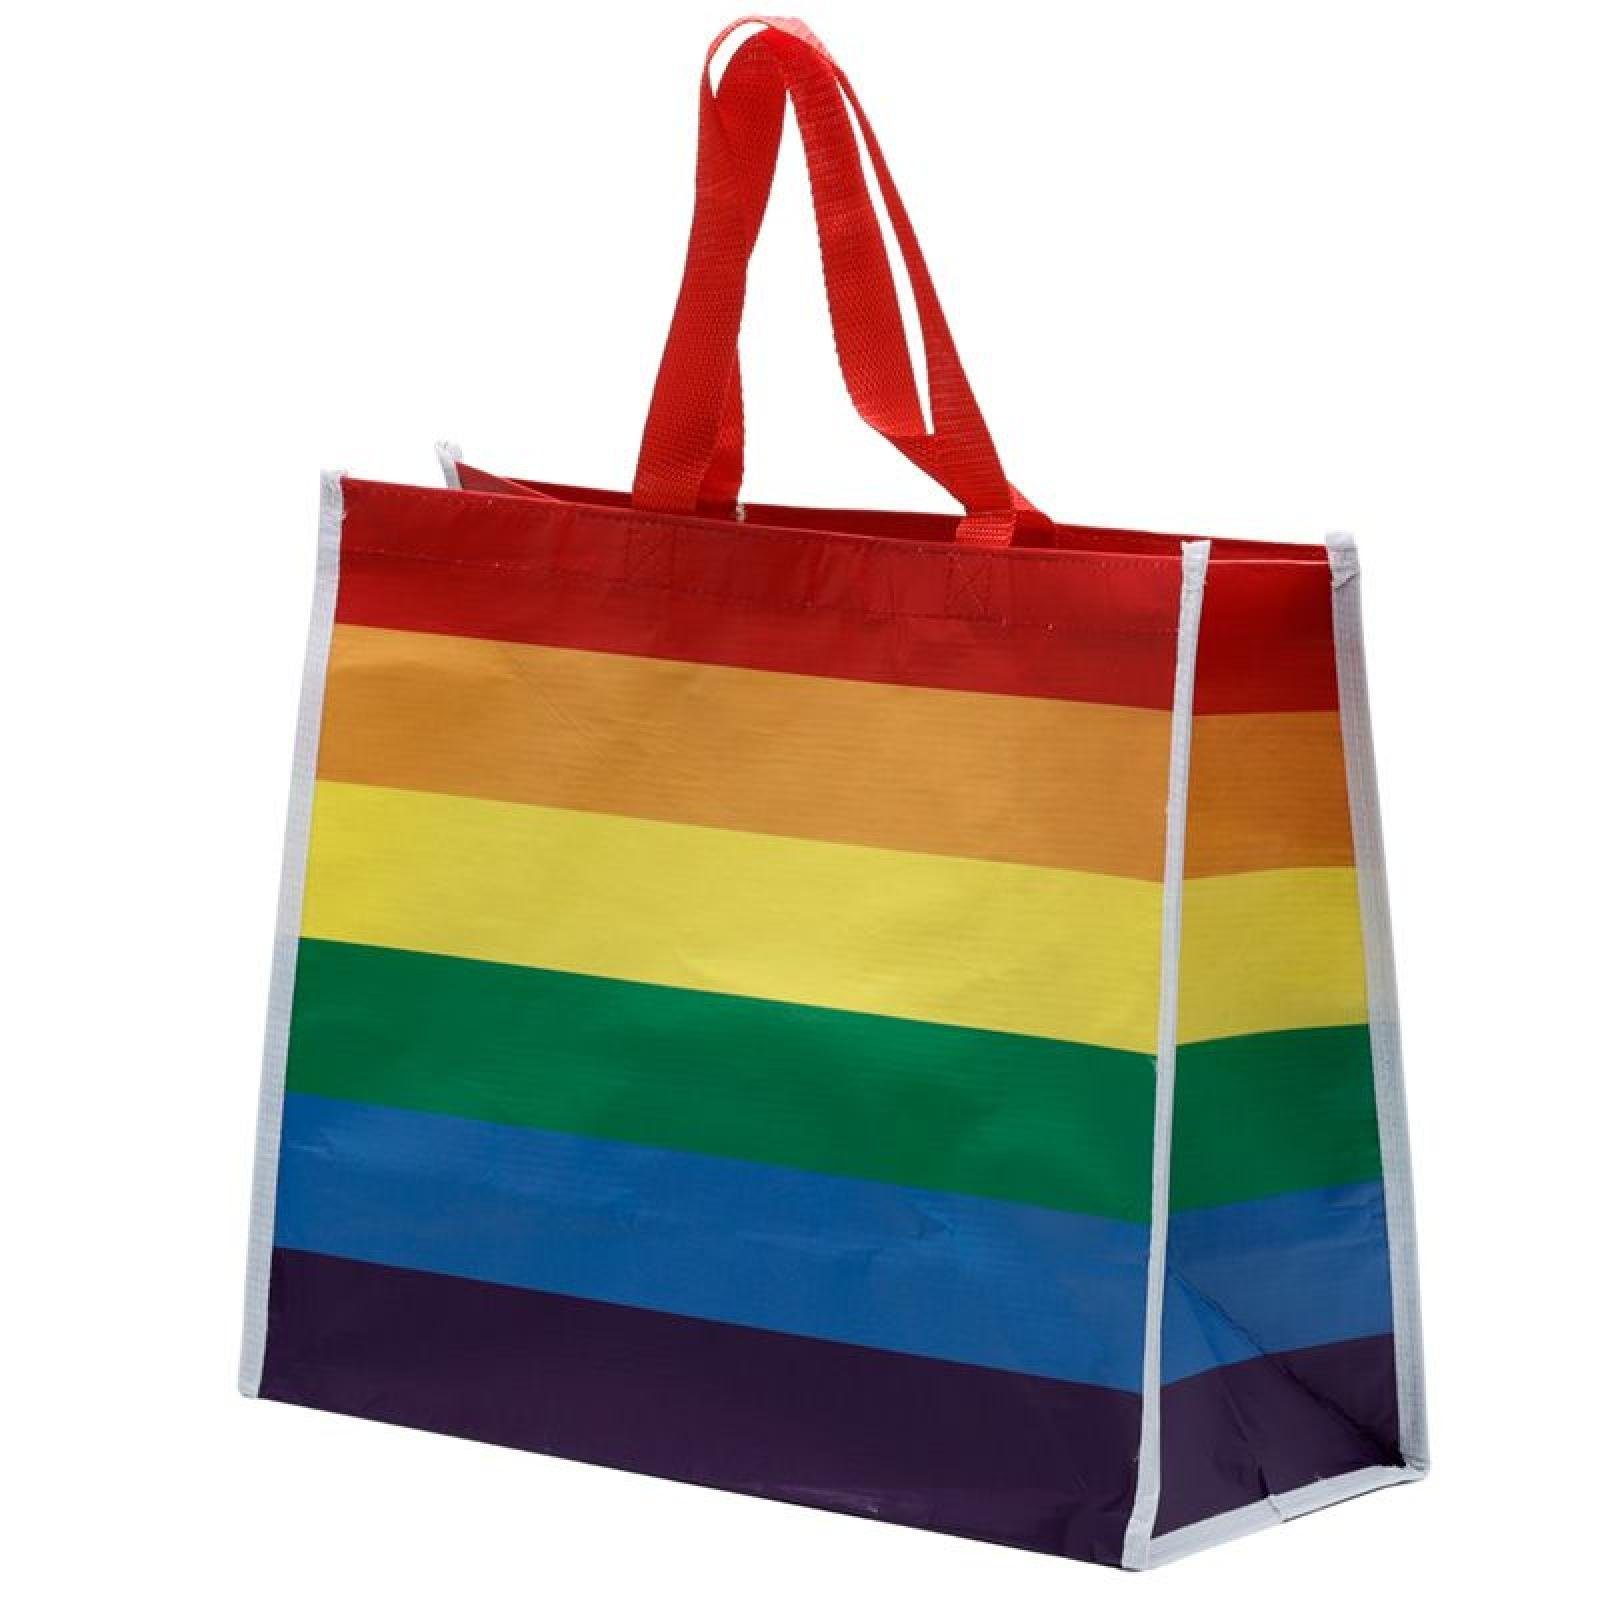 Puckator Einkaufsshopper Regenbogen wiederverwendbare Einkaufstasche aus recycelten Plastikflas